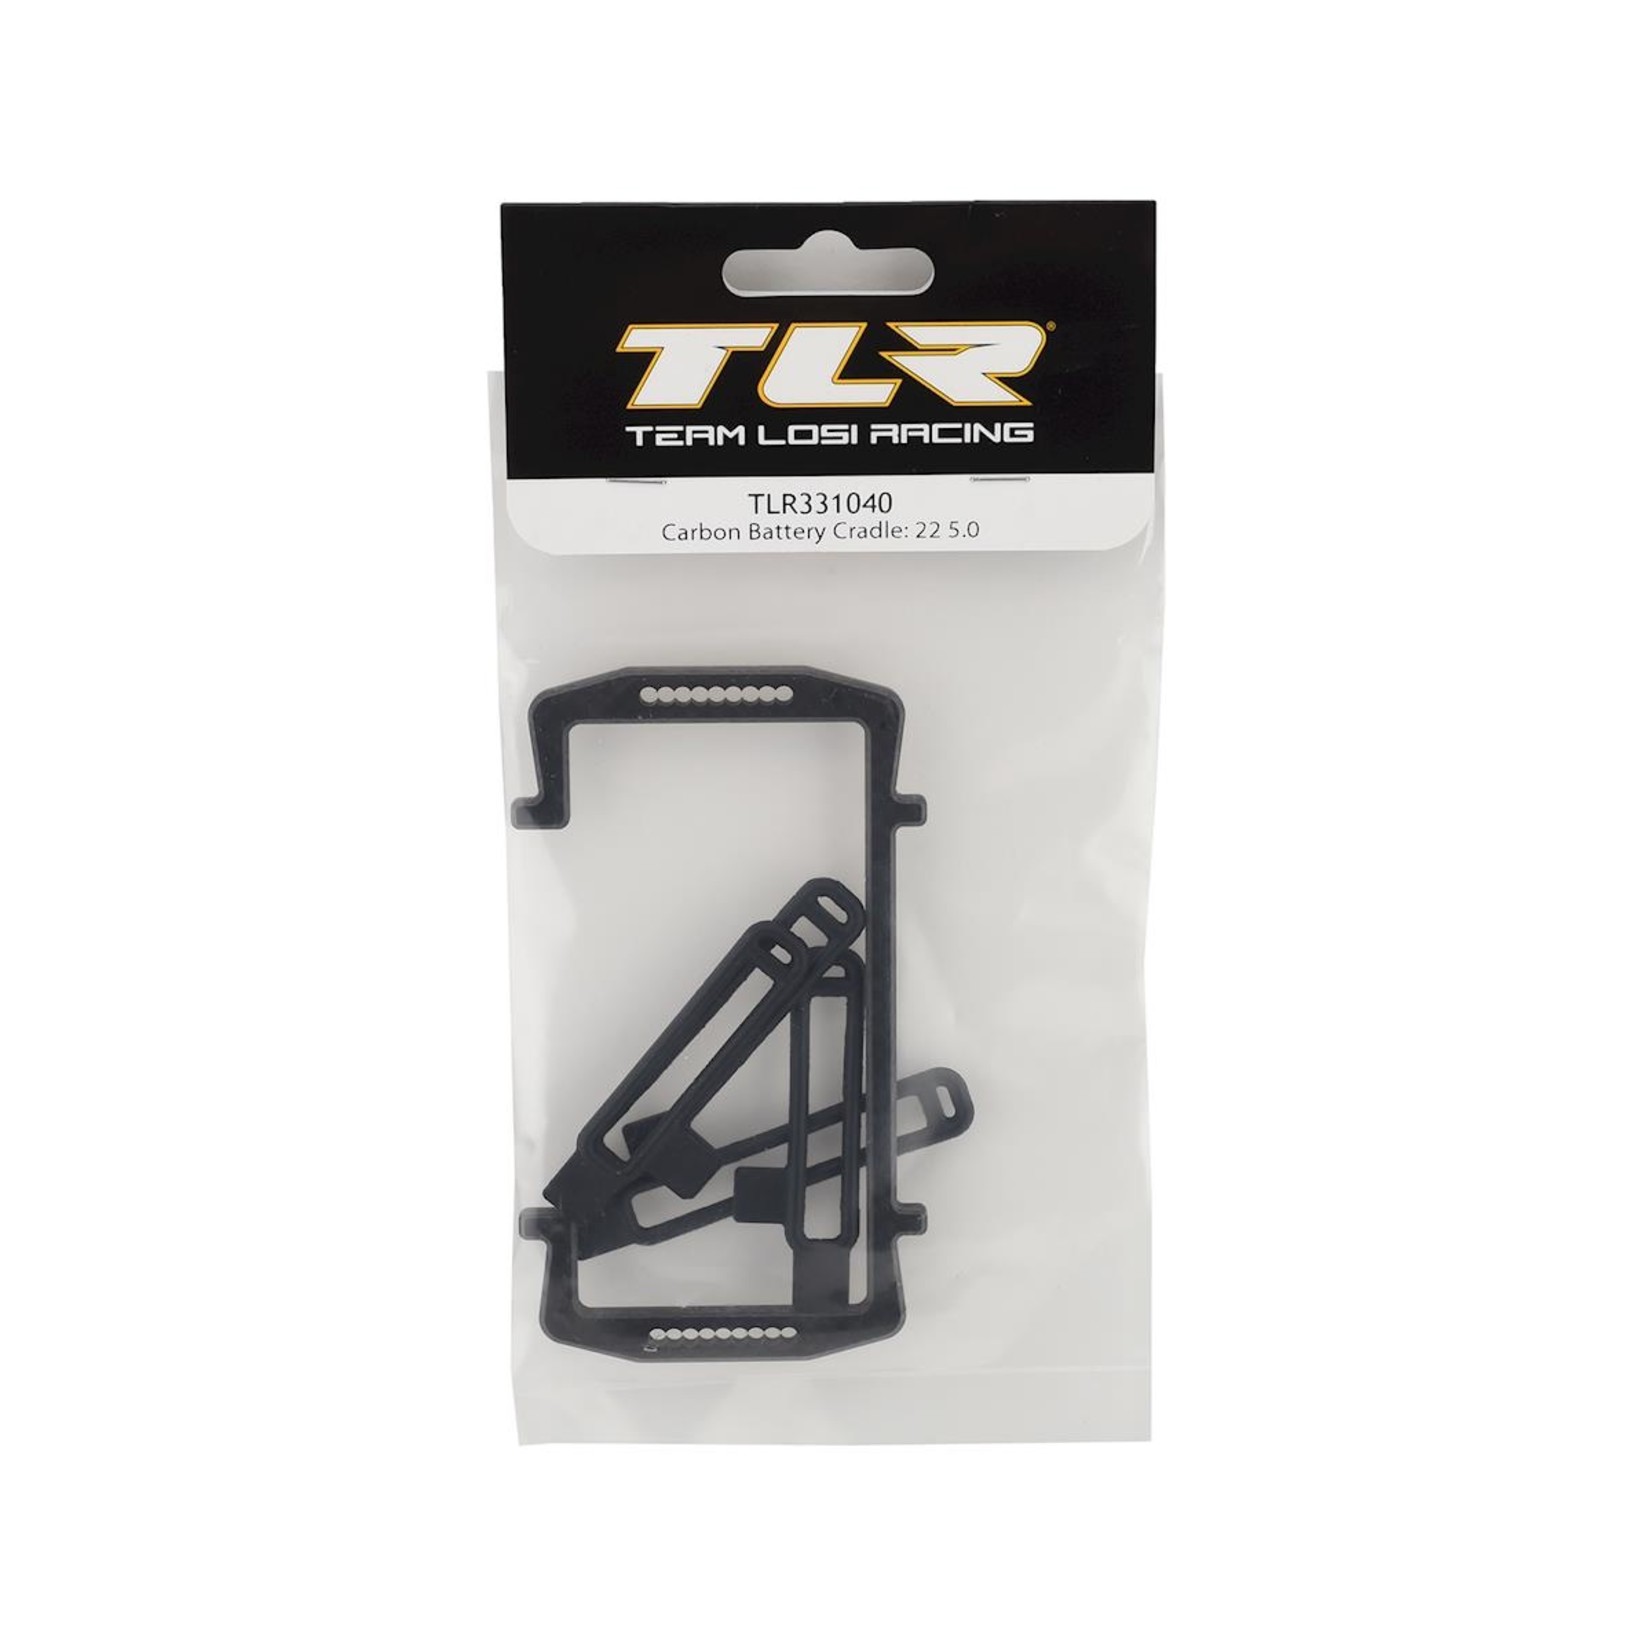 TLR Team Losi Racing 22 5.0 Carbon Fiber Battery Cradle #TLR331040